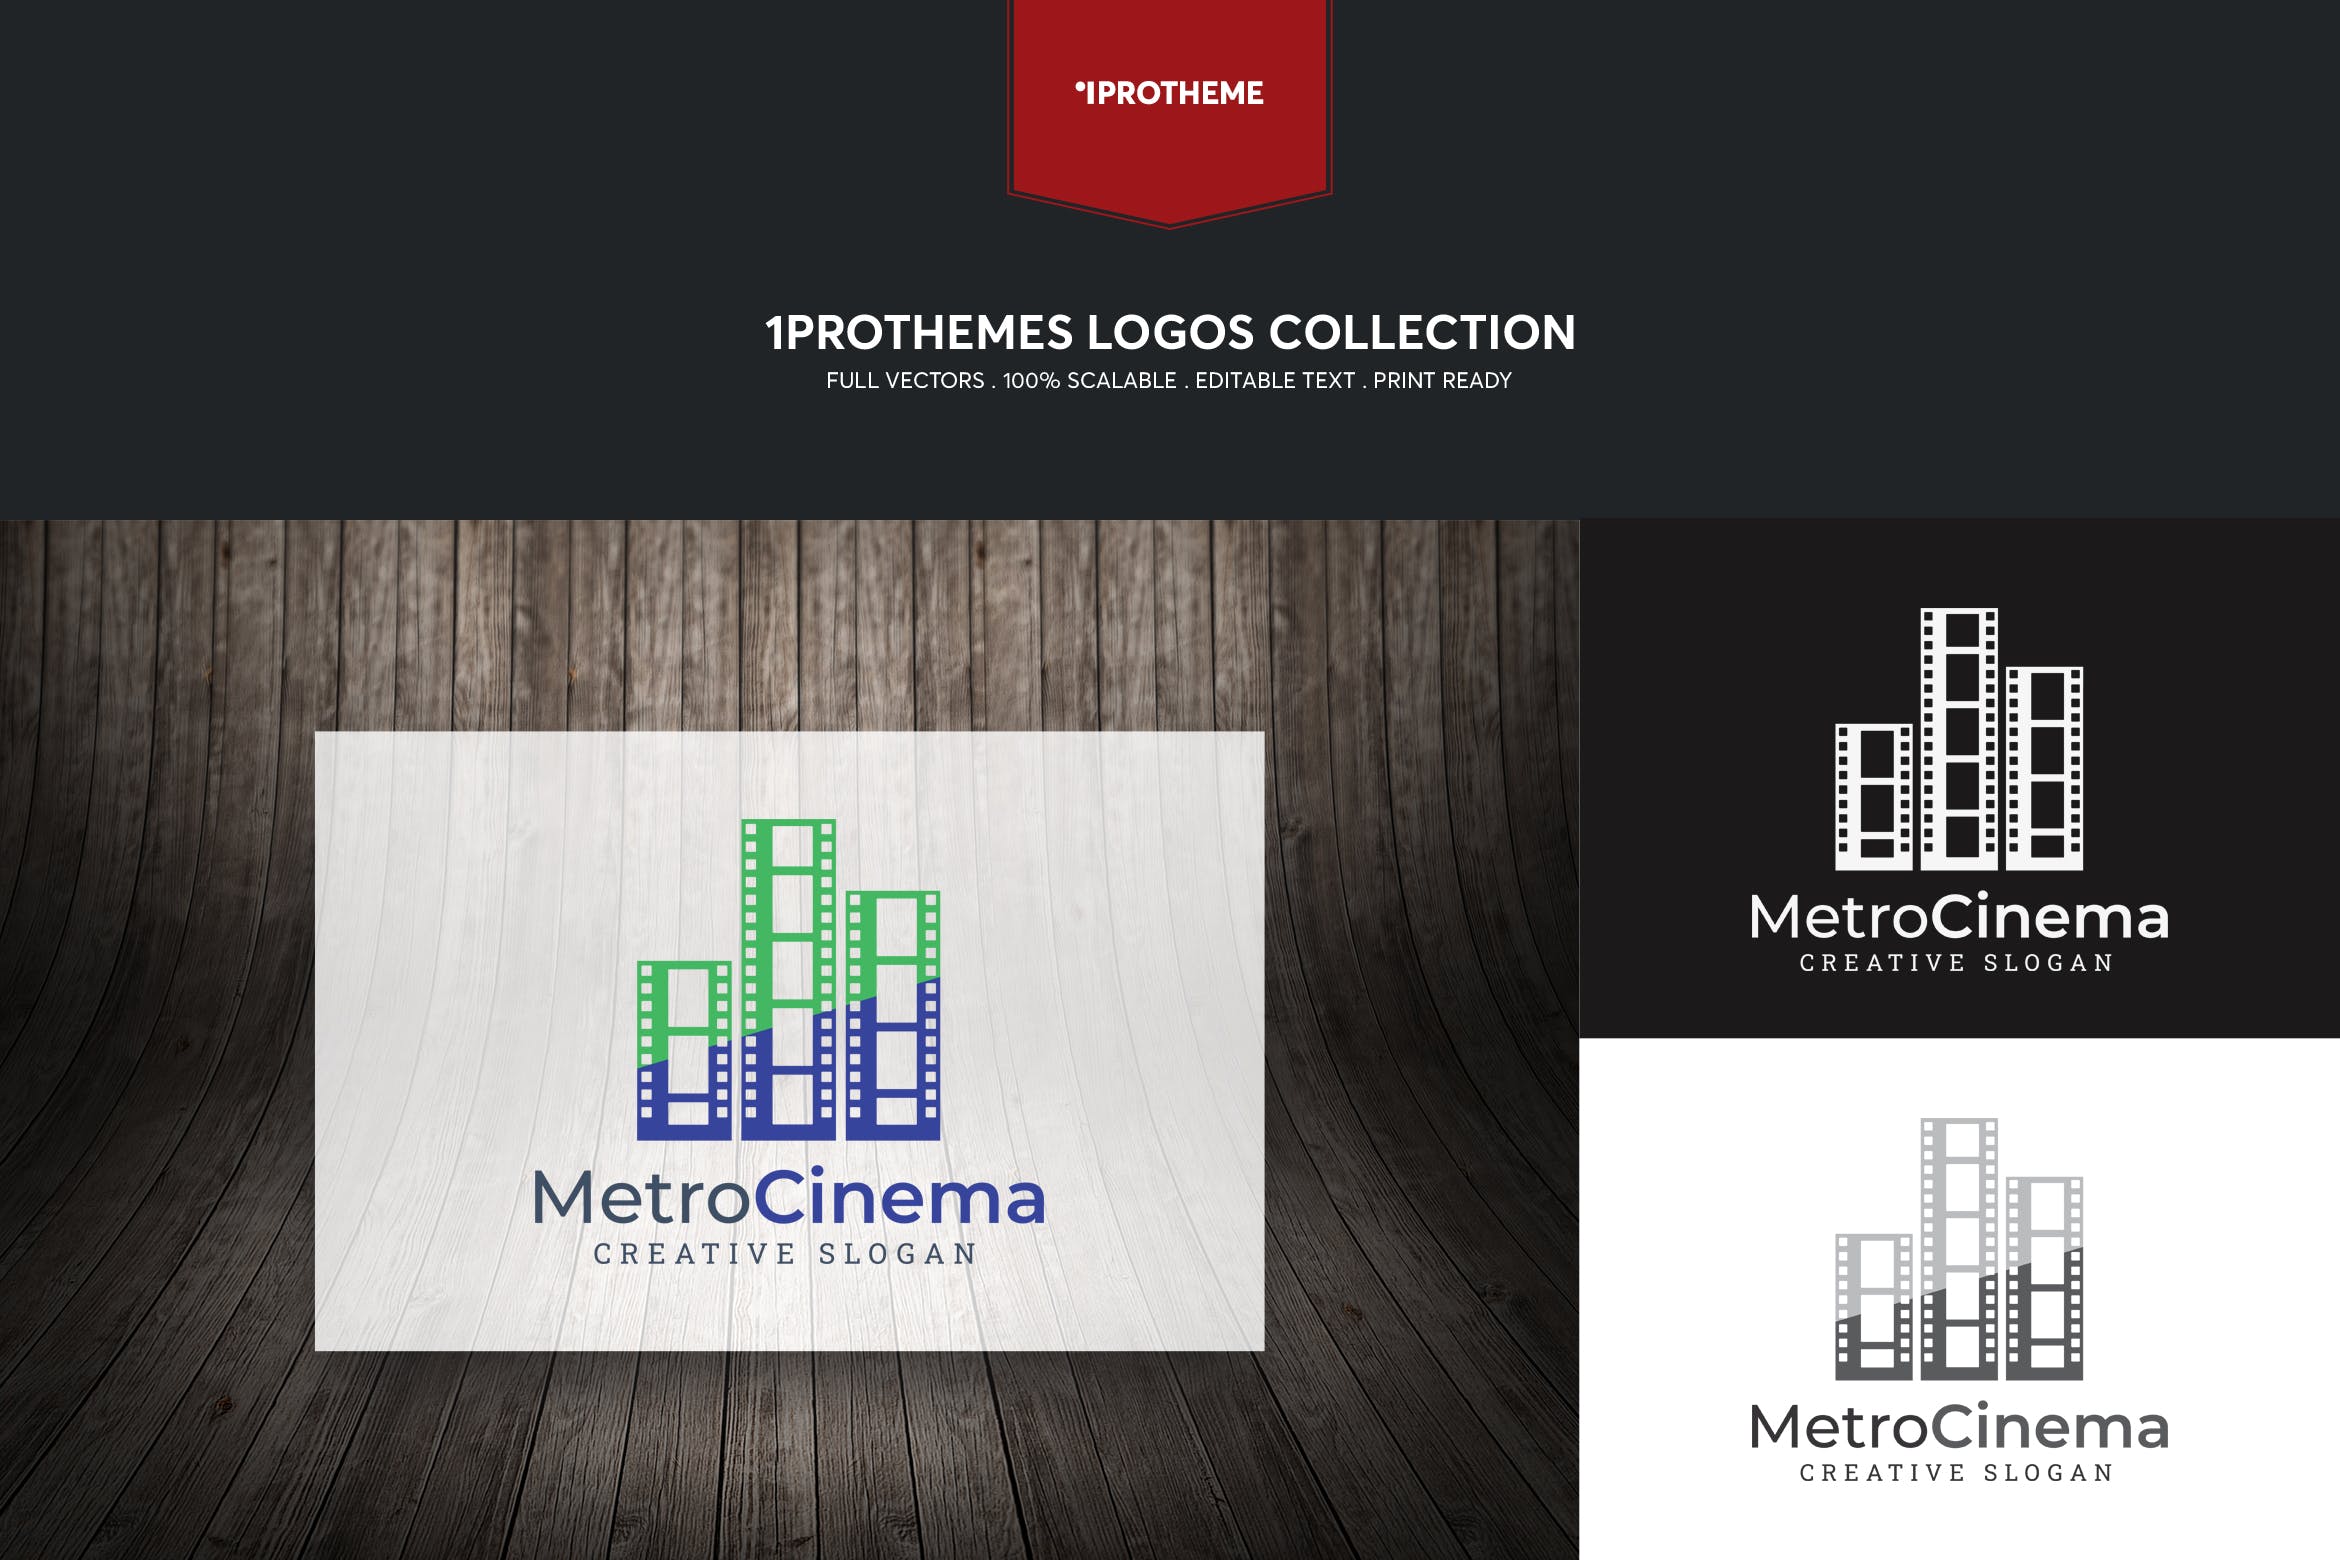 电影公司/影院品牌Logo设计第一素材精选模板 Metro Cinema Logo Template插图